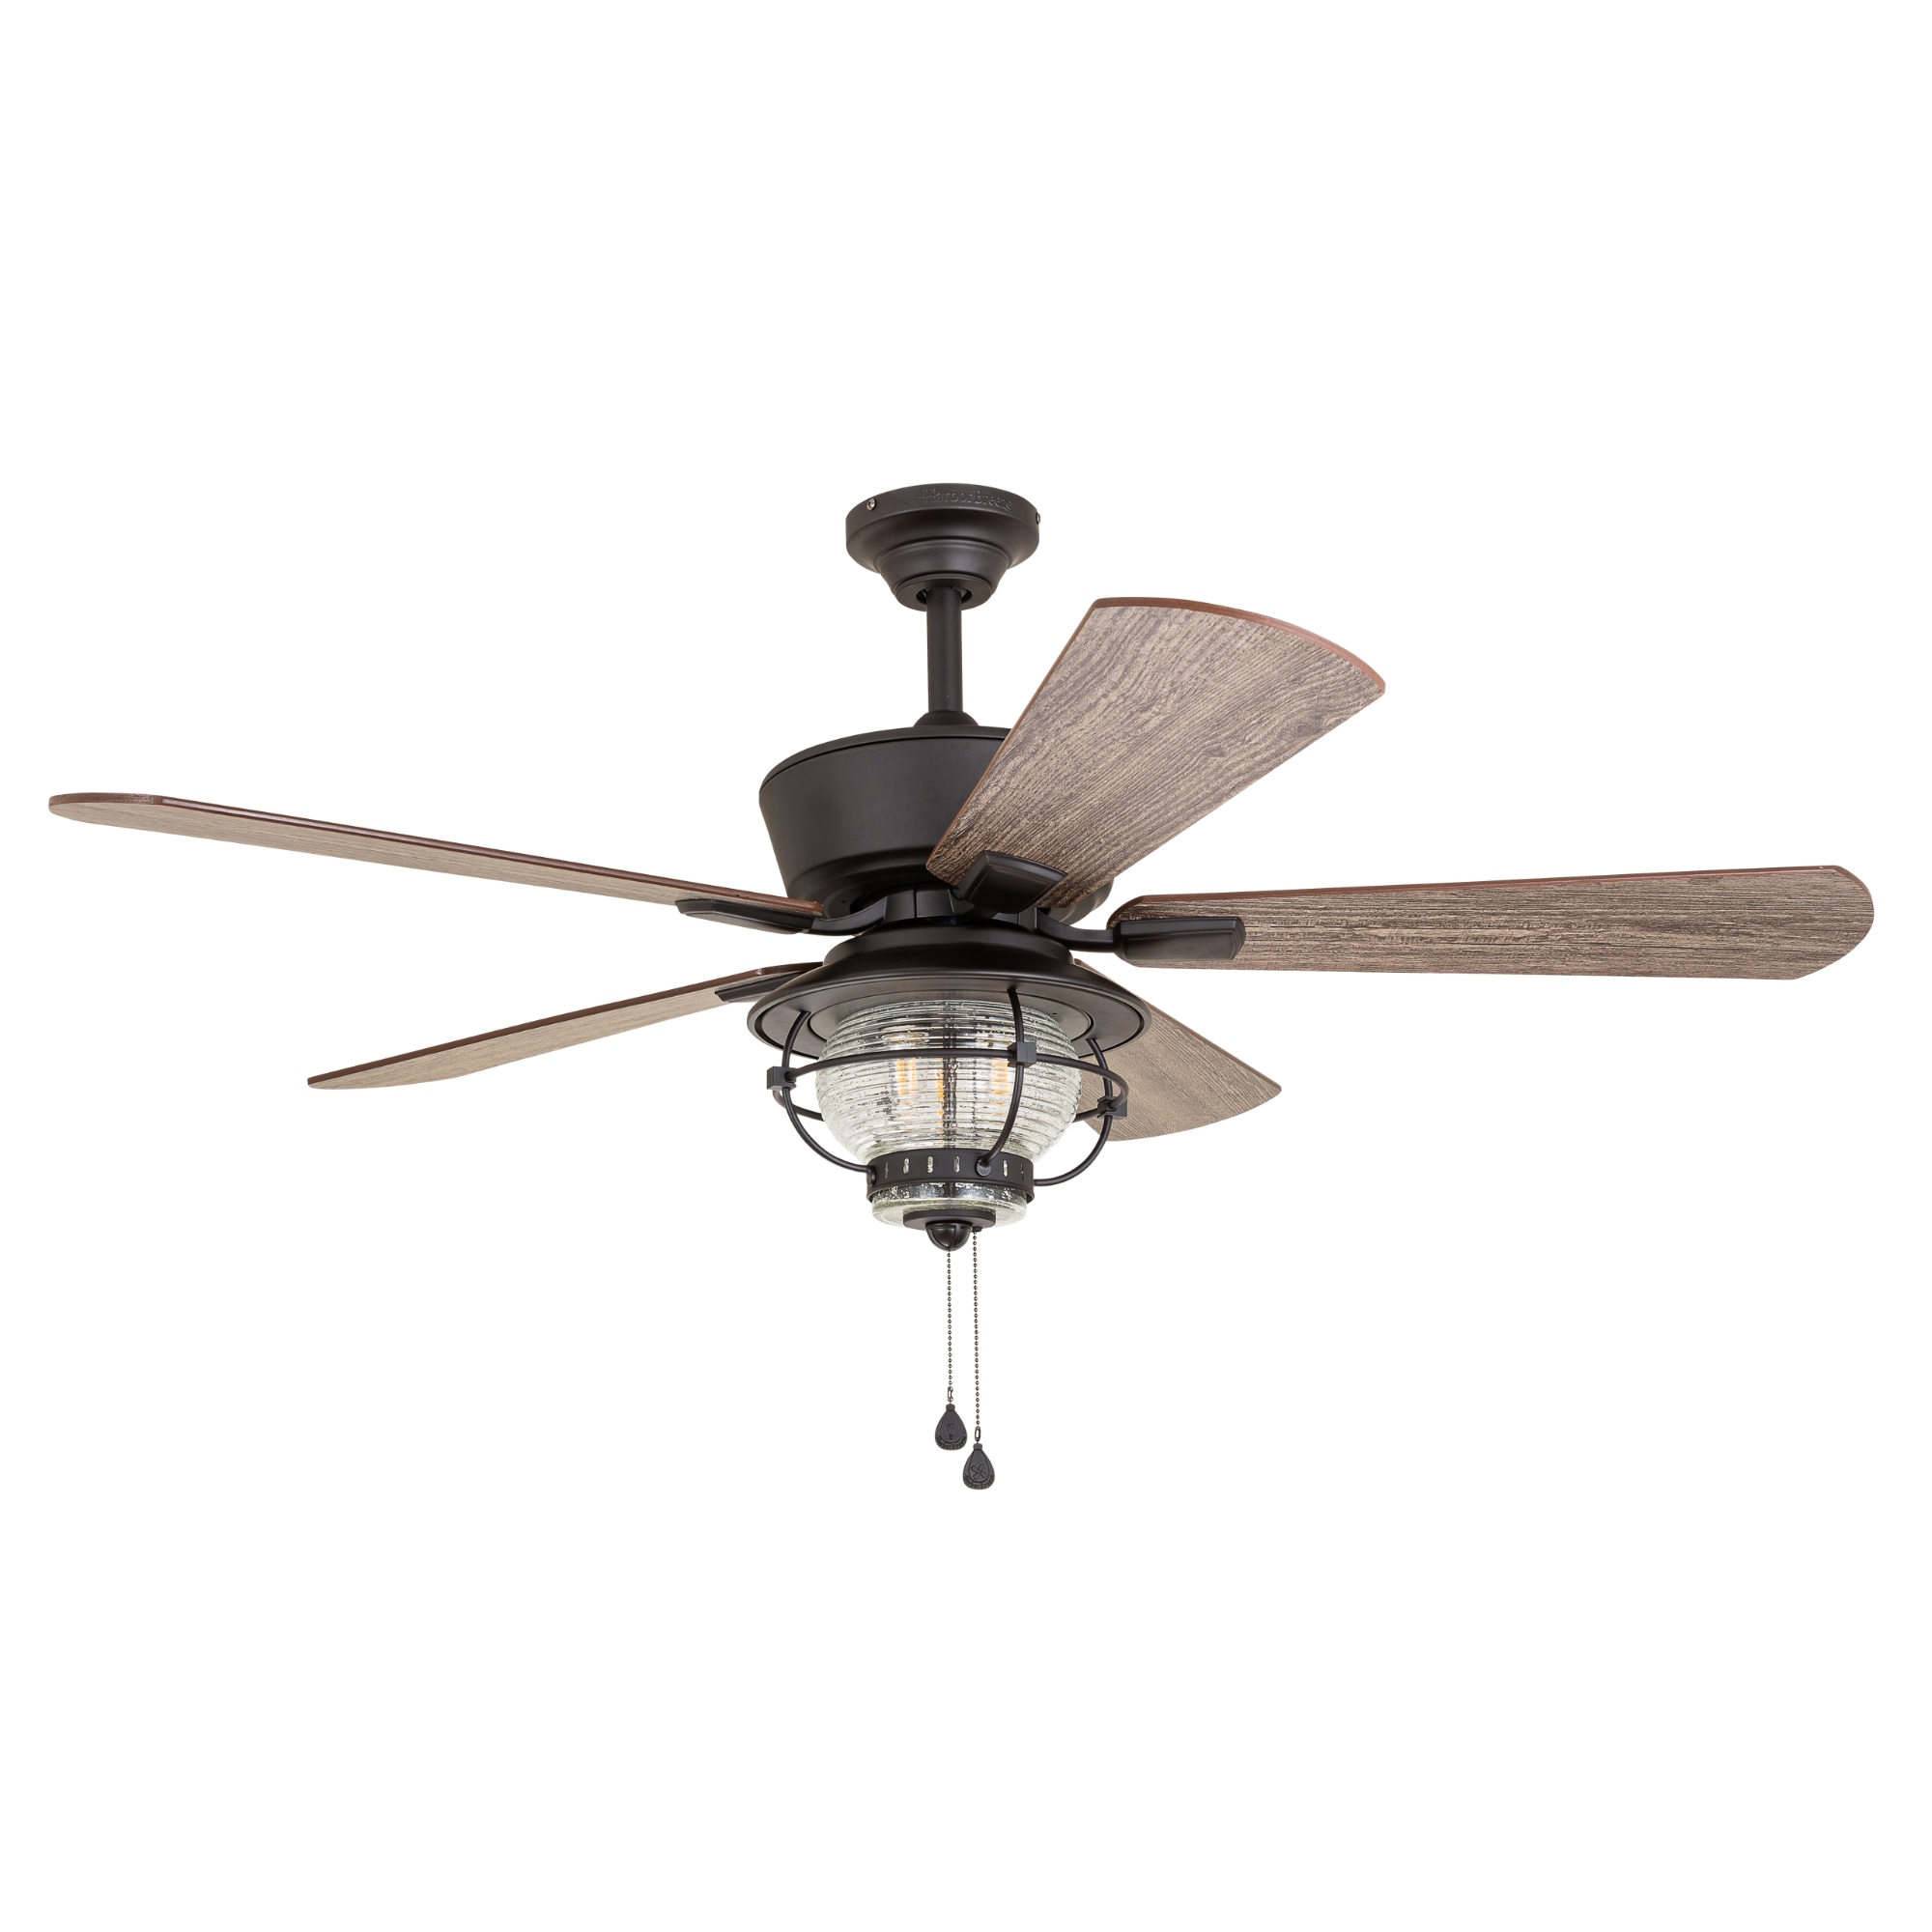 Harbor Breeze Merrimack Ii 52 In Bronze Indoor Outdoor Ceiling Fan With Light 5 Blade The Fans Department At Lowes Com